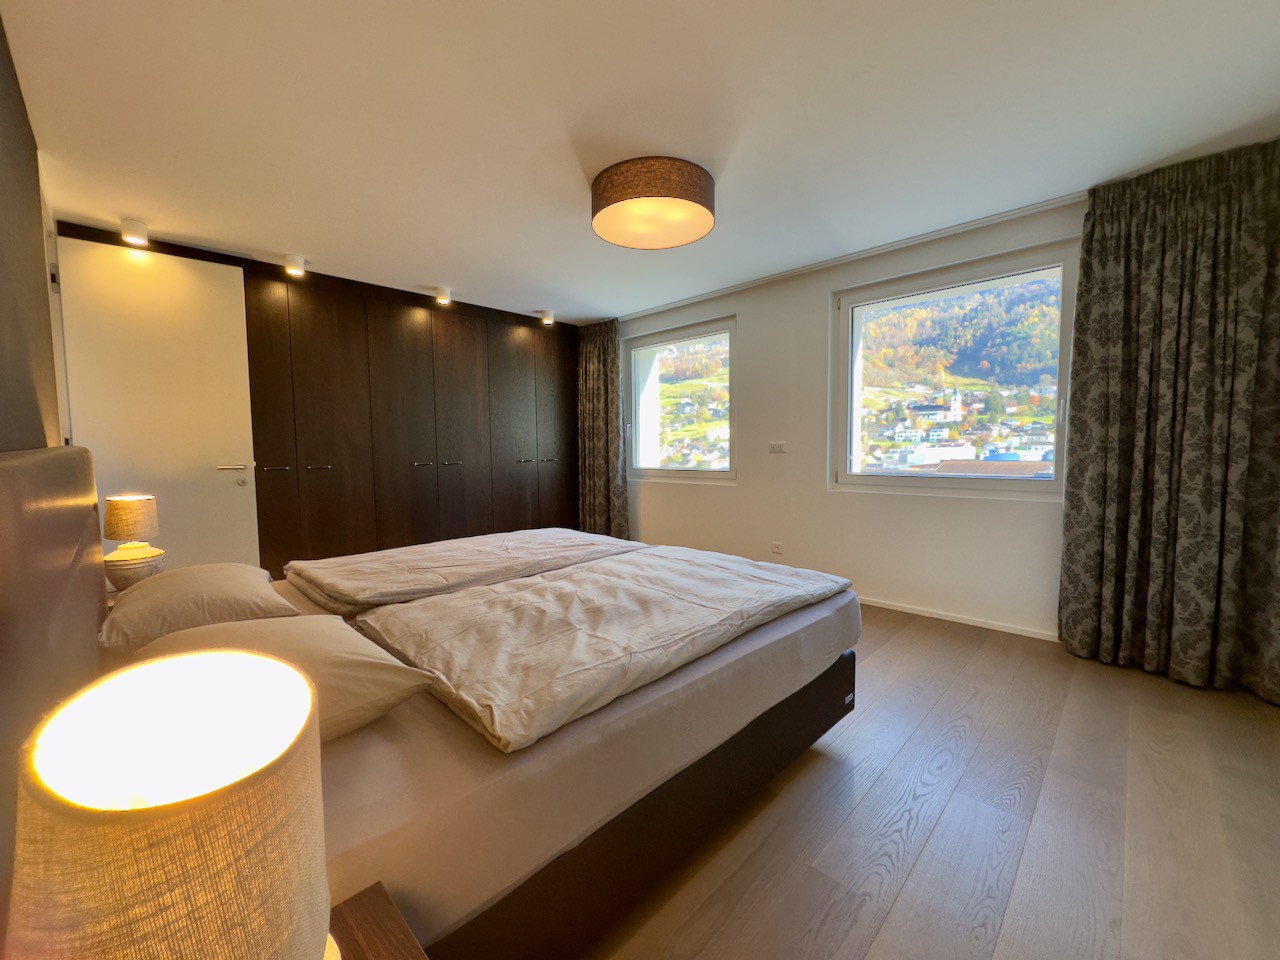 Wohnung in Triesen - Haupt-Schlafzimmer mit atemberaubender Aussicht